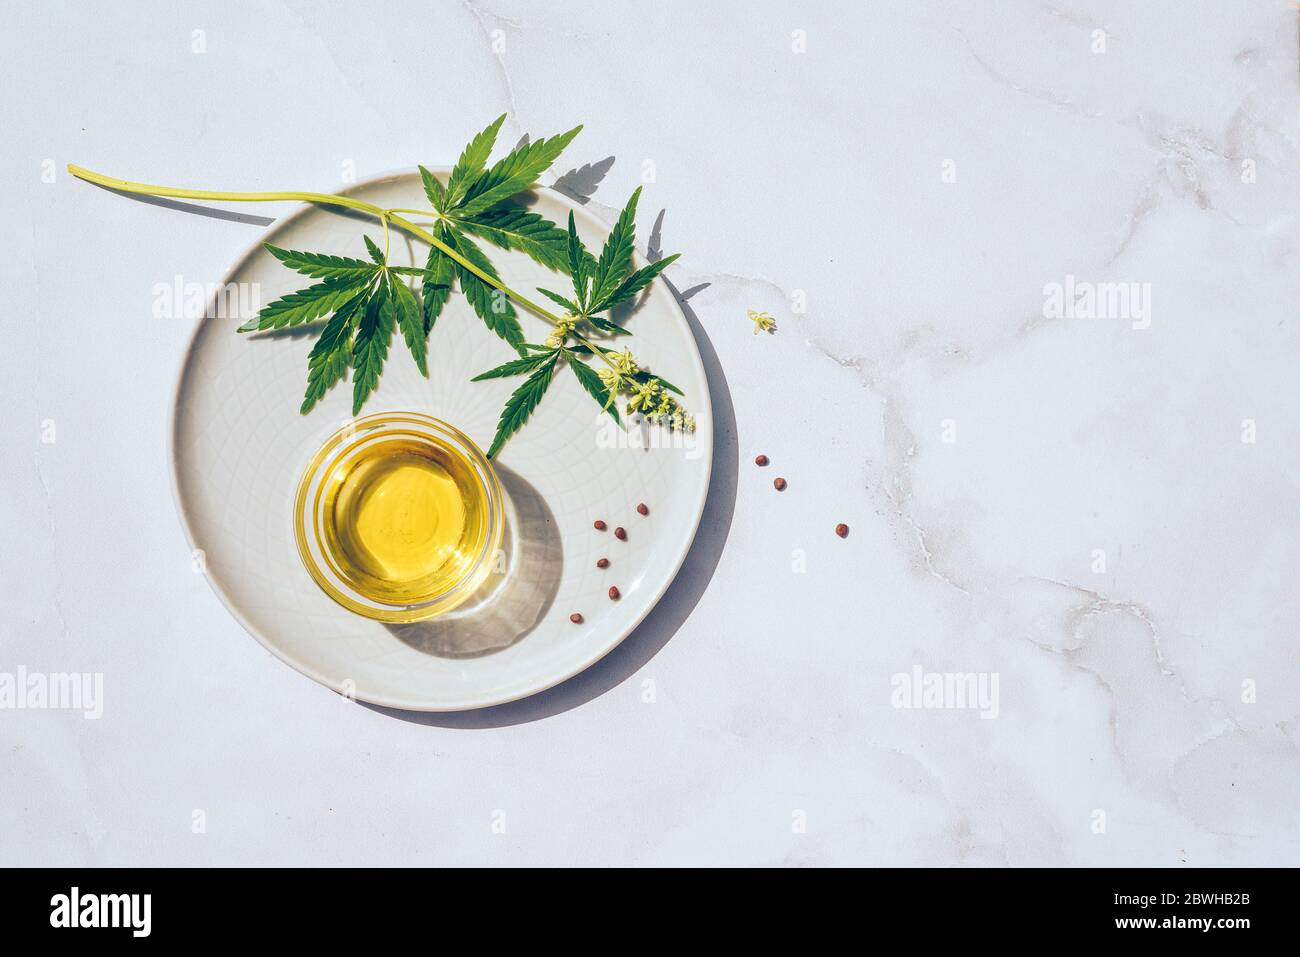 Cannabis médical marijuana CBD huile. CBD huile produits de chanvre alternative homéopathie Banque D'Images